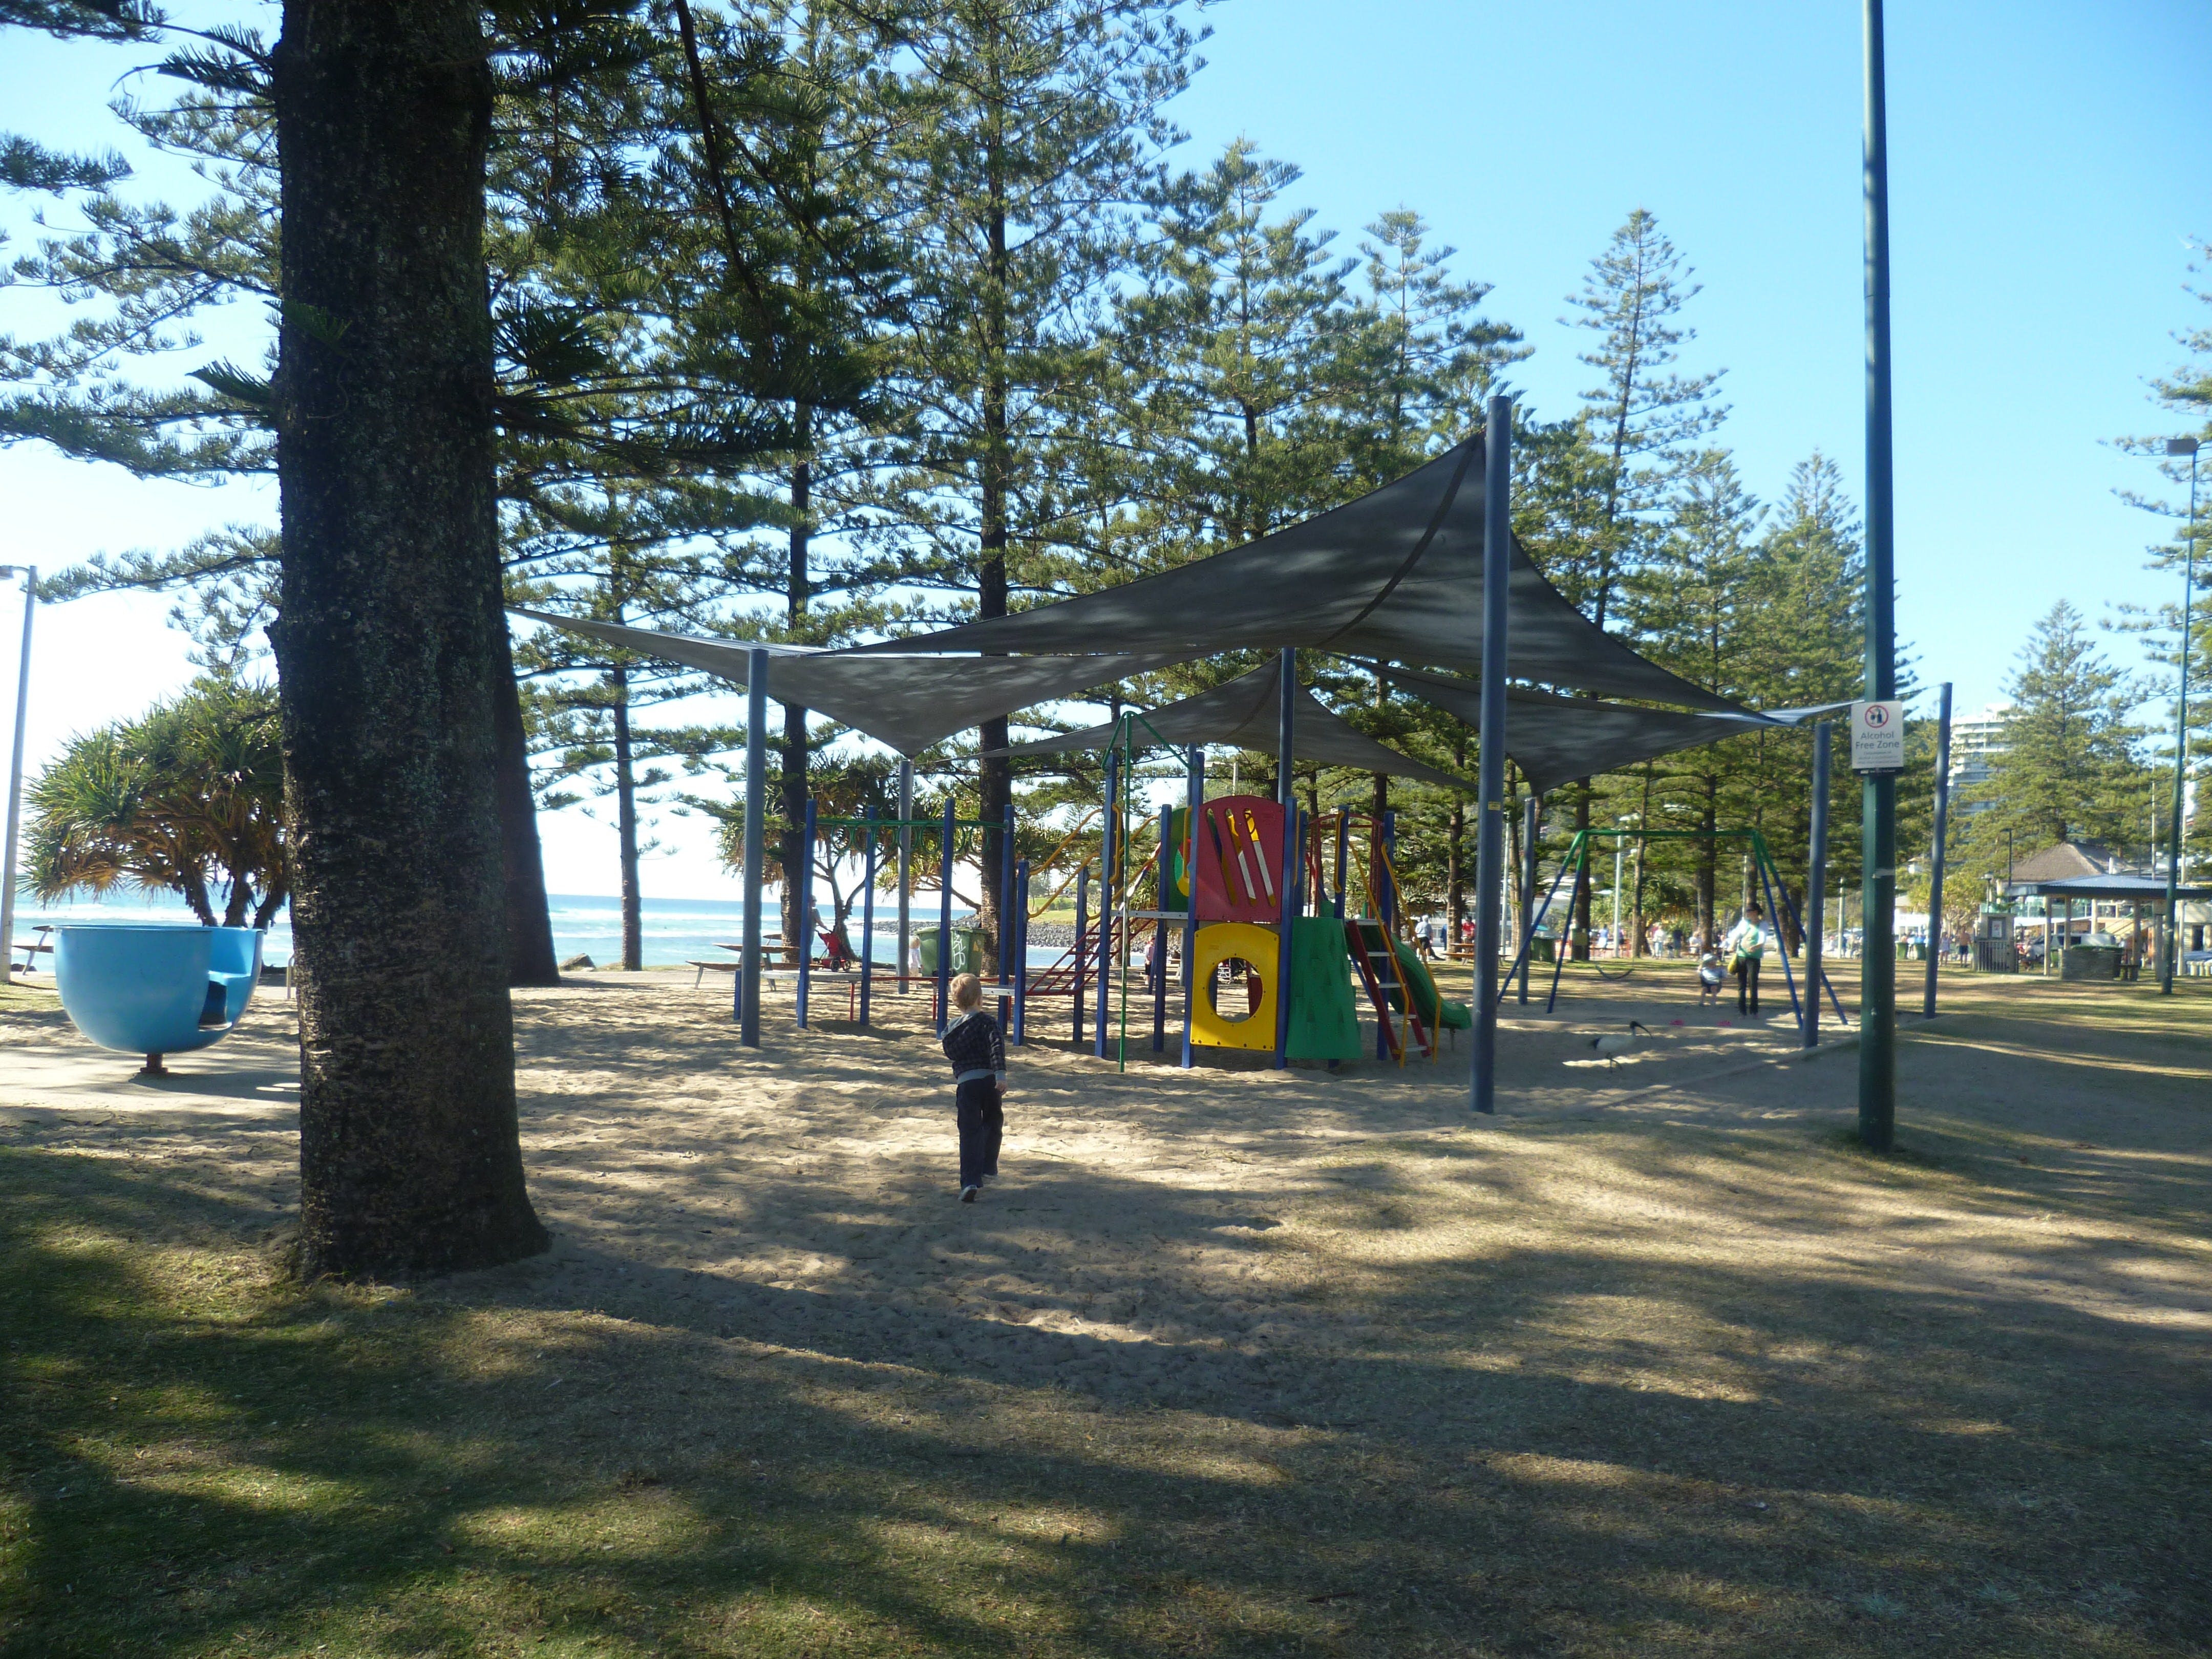 Justins Park - Tourism Adelaide